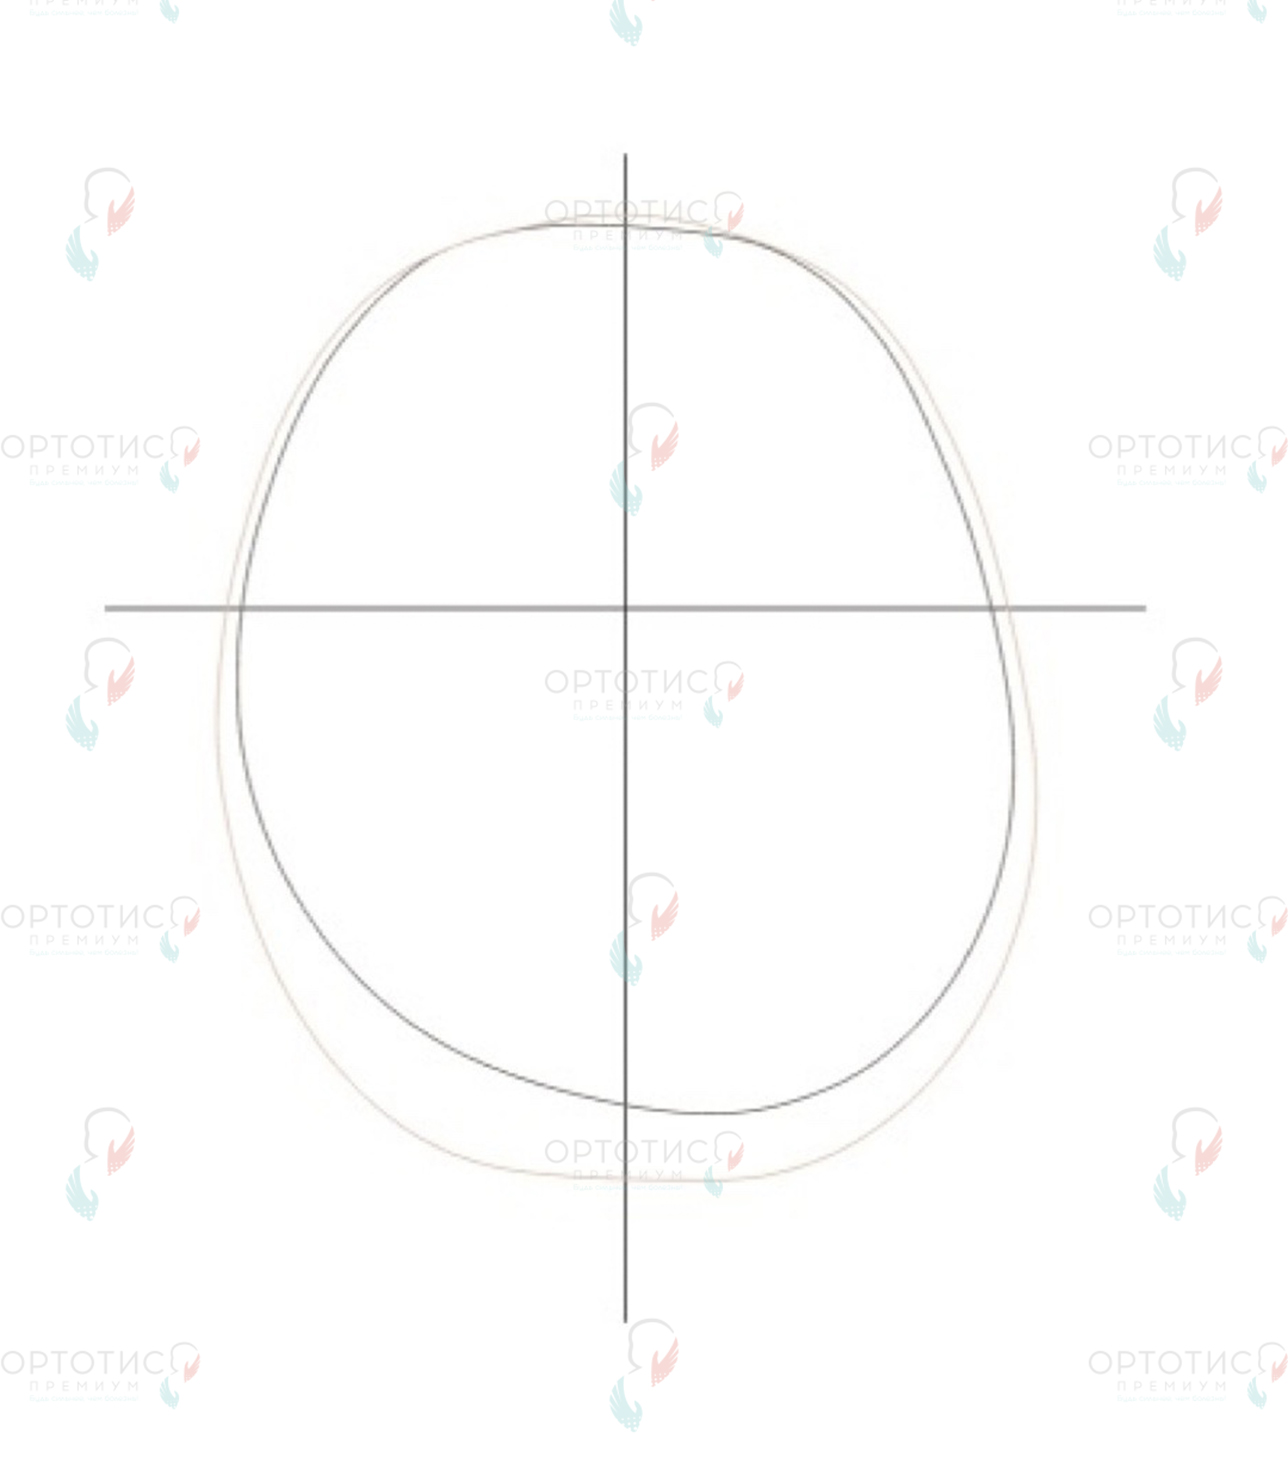 Позиционная асимметричная брахицефалия, 3,5 месяца - Ортотис Премиум